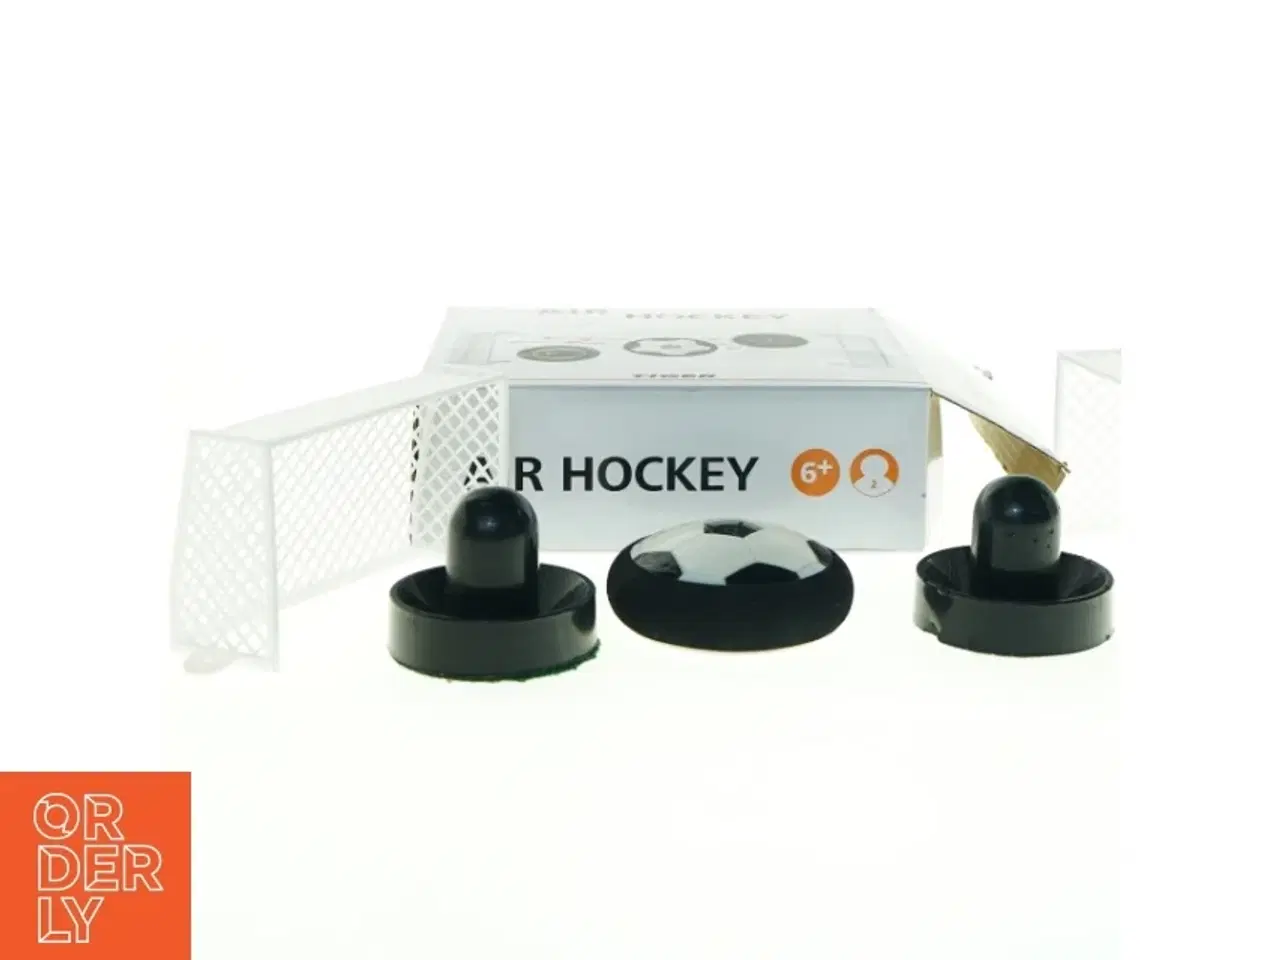 Billede 1 - Bord-Airhockey Spil fra Tiger (str. Mål 15 x 8 x 5 cm)